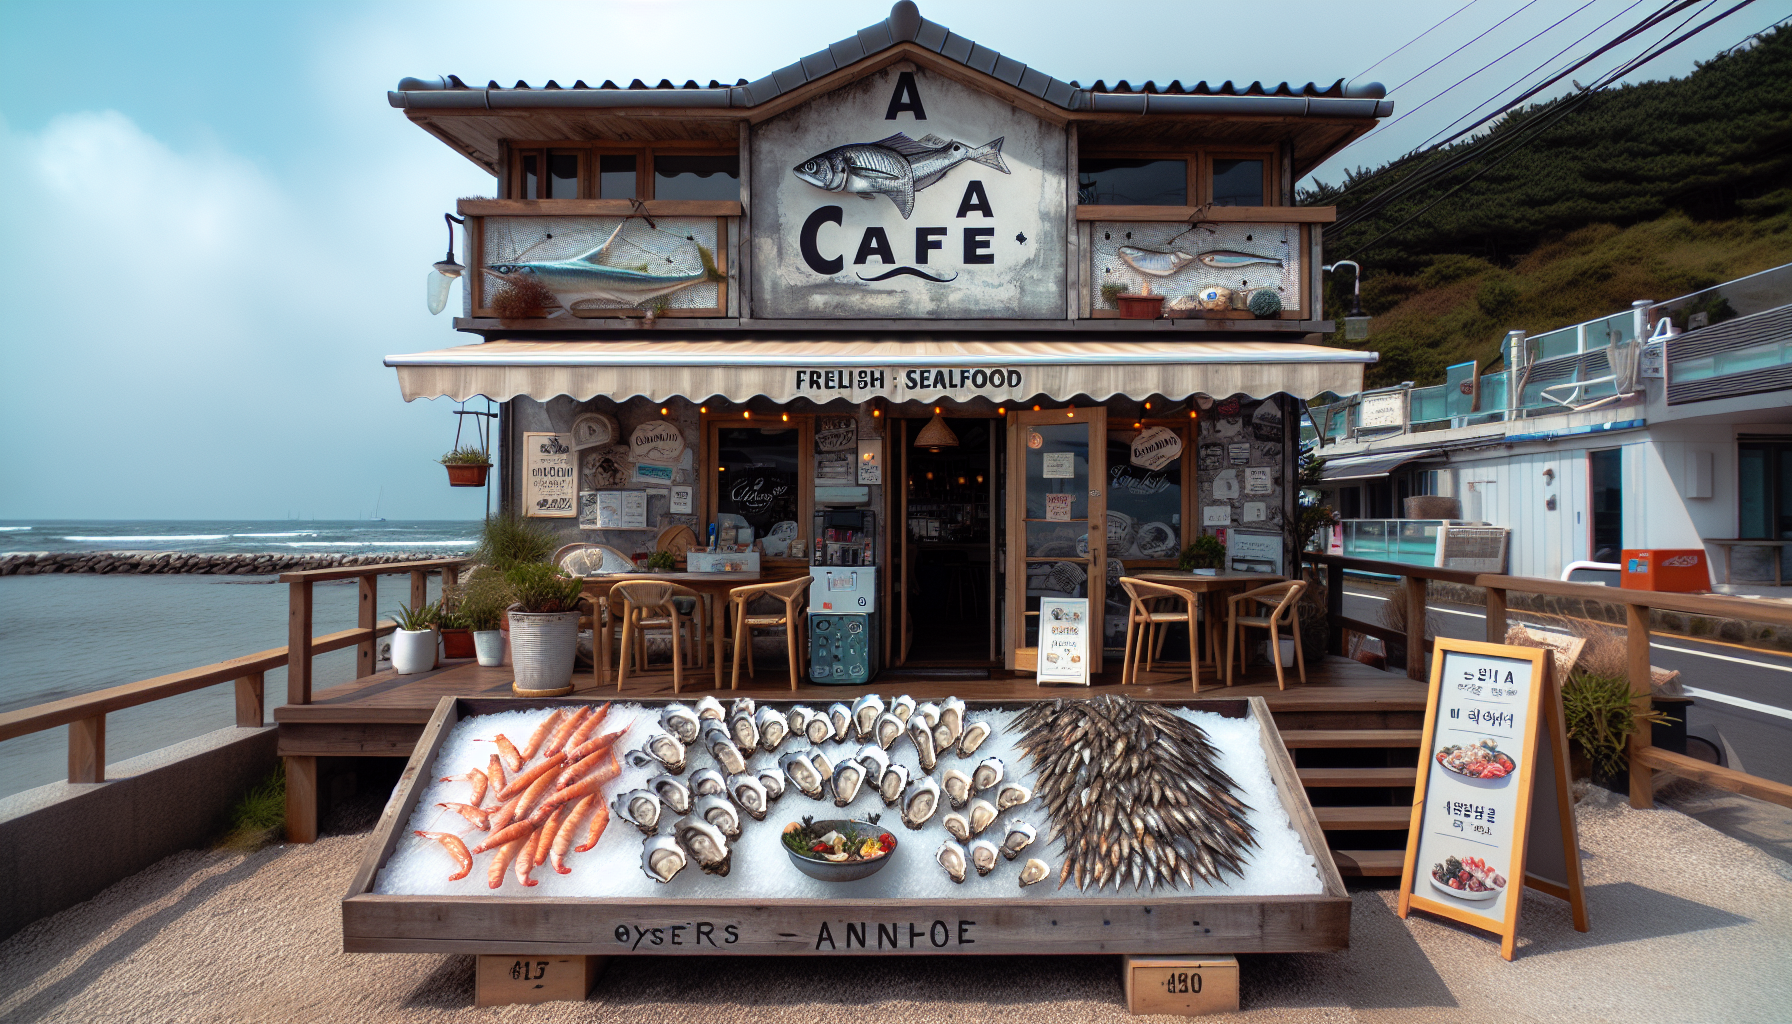 Quán A: Nằm ngay bên bờ biển, quán A nổi tiếng với các món hải sản tươi sống như hàu, tôm, cá trích.